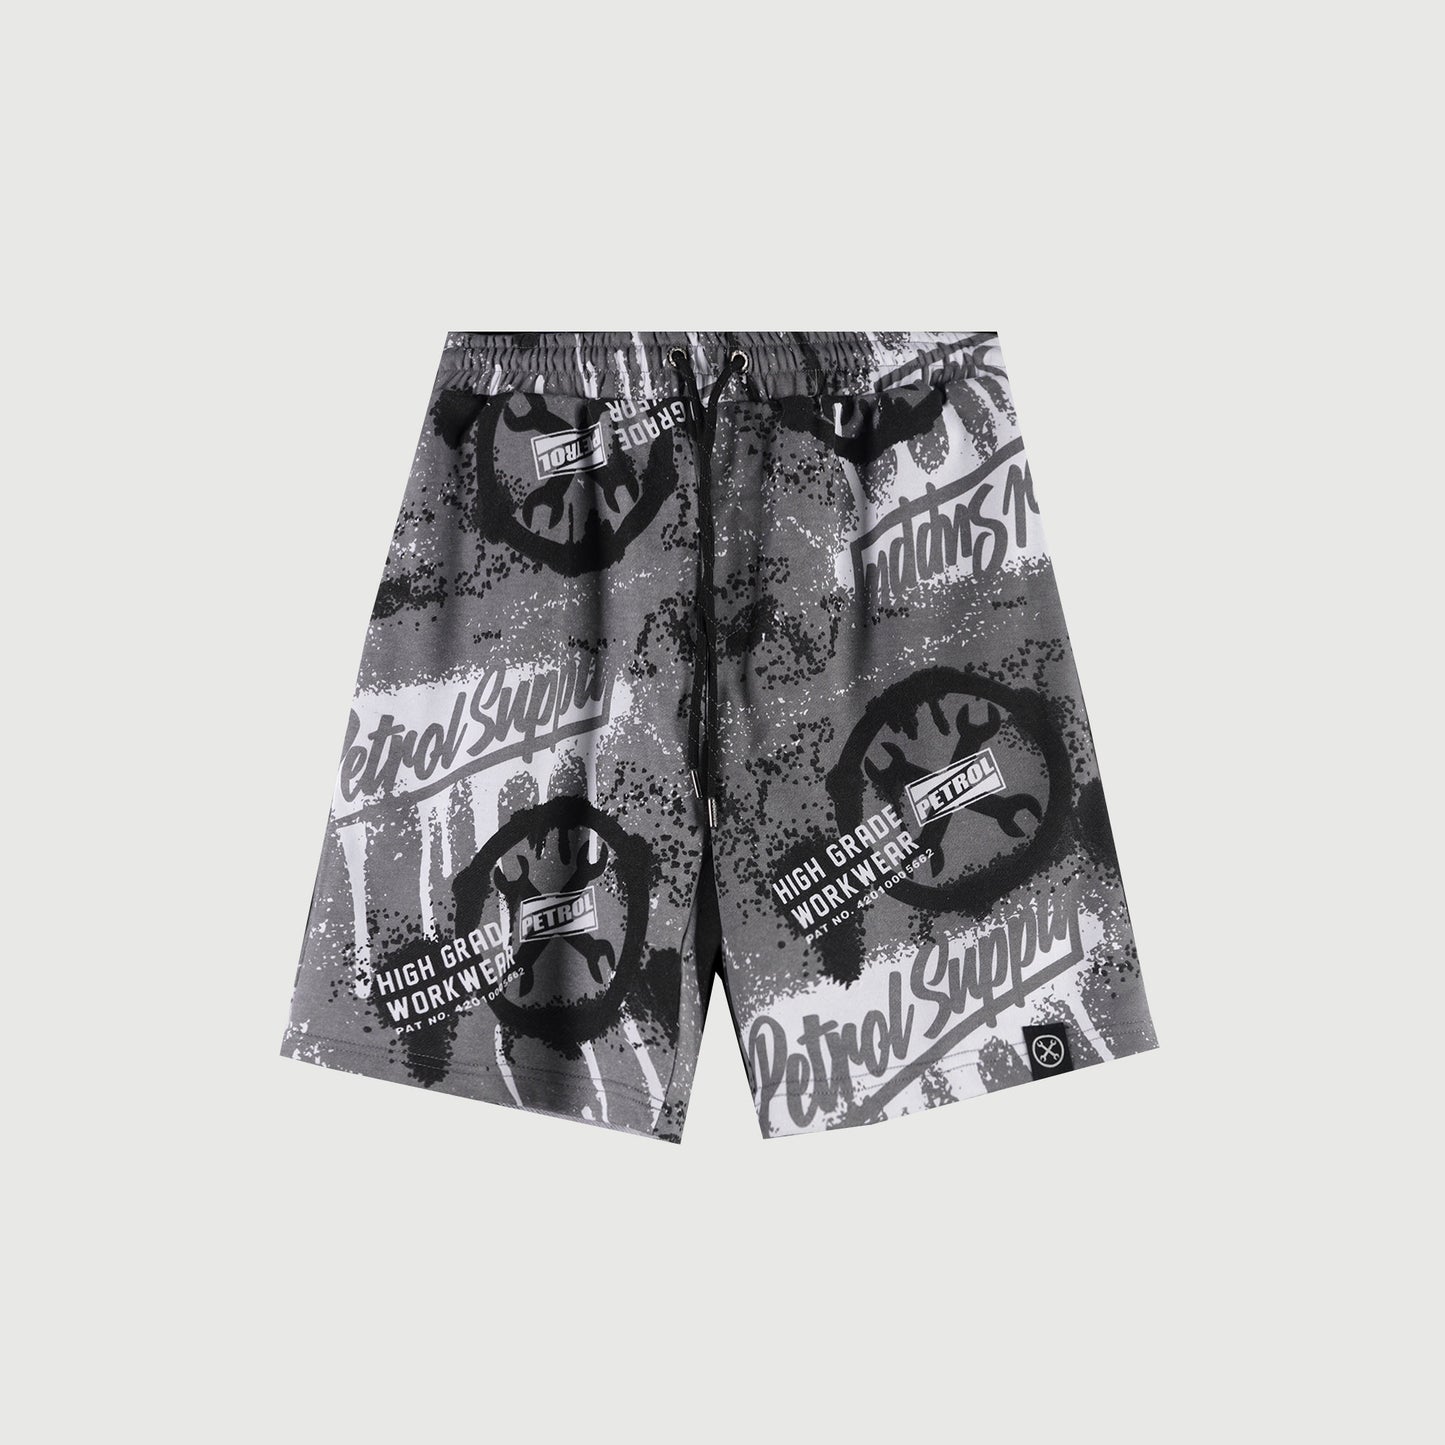 Petrol Basic Non-Denim Jogger Shorts for Men Regular Fitting Garment Wash Fabric Casual short Charcoal Jogger short for Men 117957 (Charcoal)